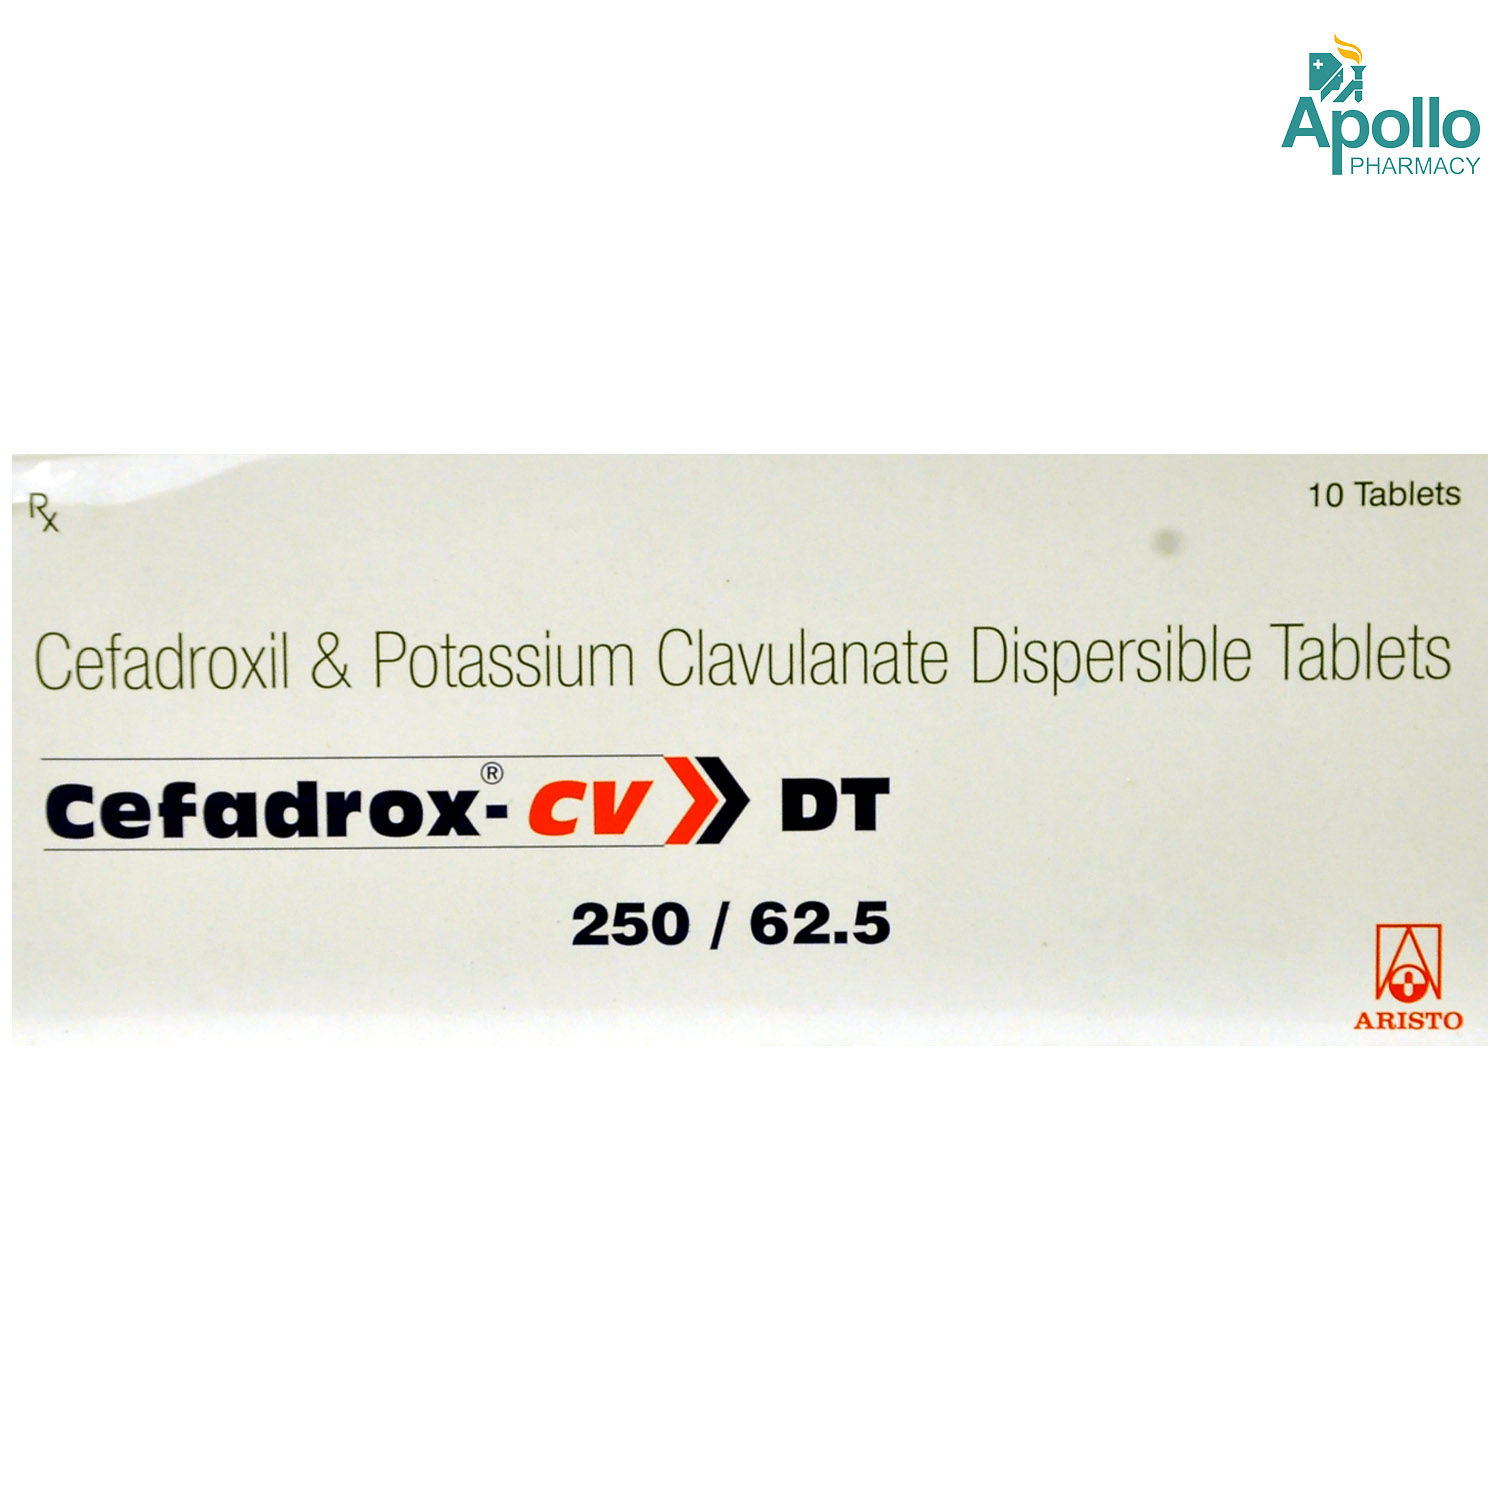 Buy Cefadrox CV DT 250/62.5 Tablet 10's Online